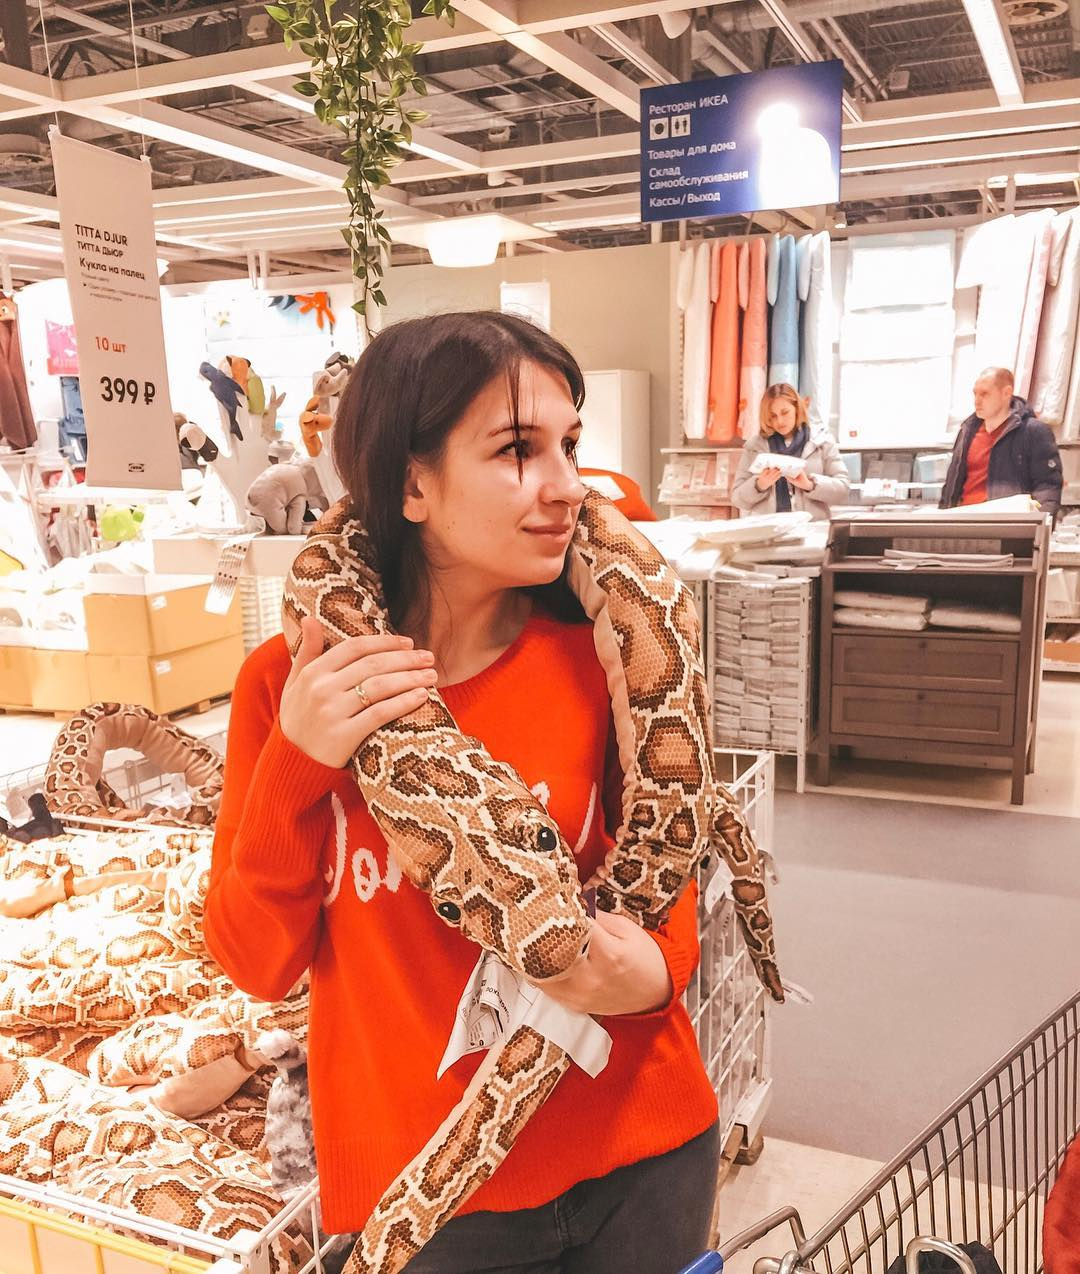 Улыбки и декоративные змеи на плечах: 10 фото привлекательных сыктывкарок из Instagram